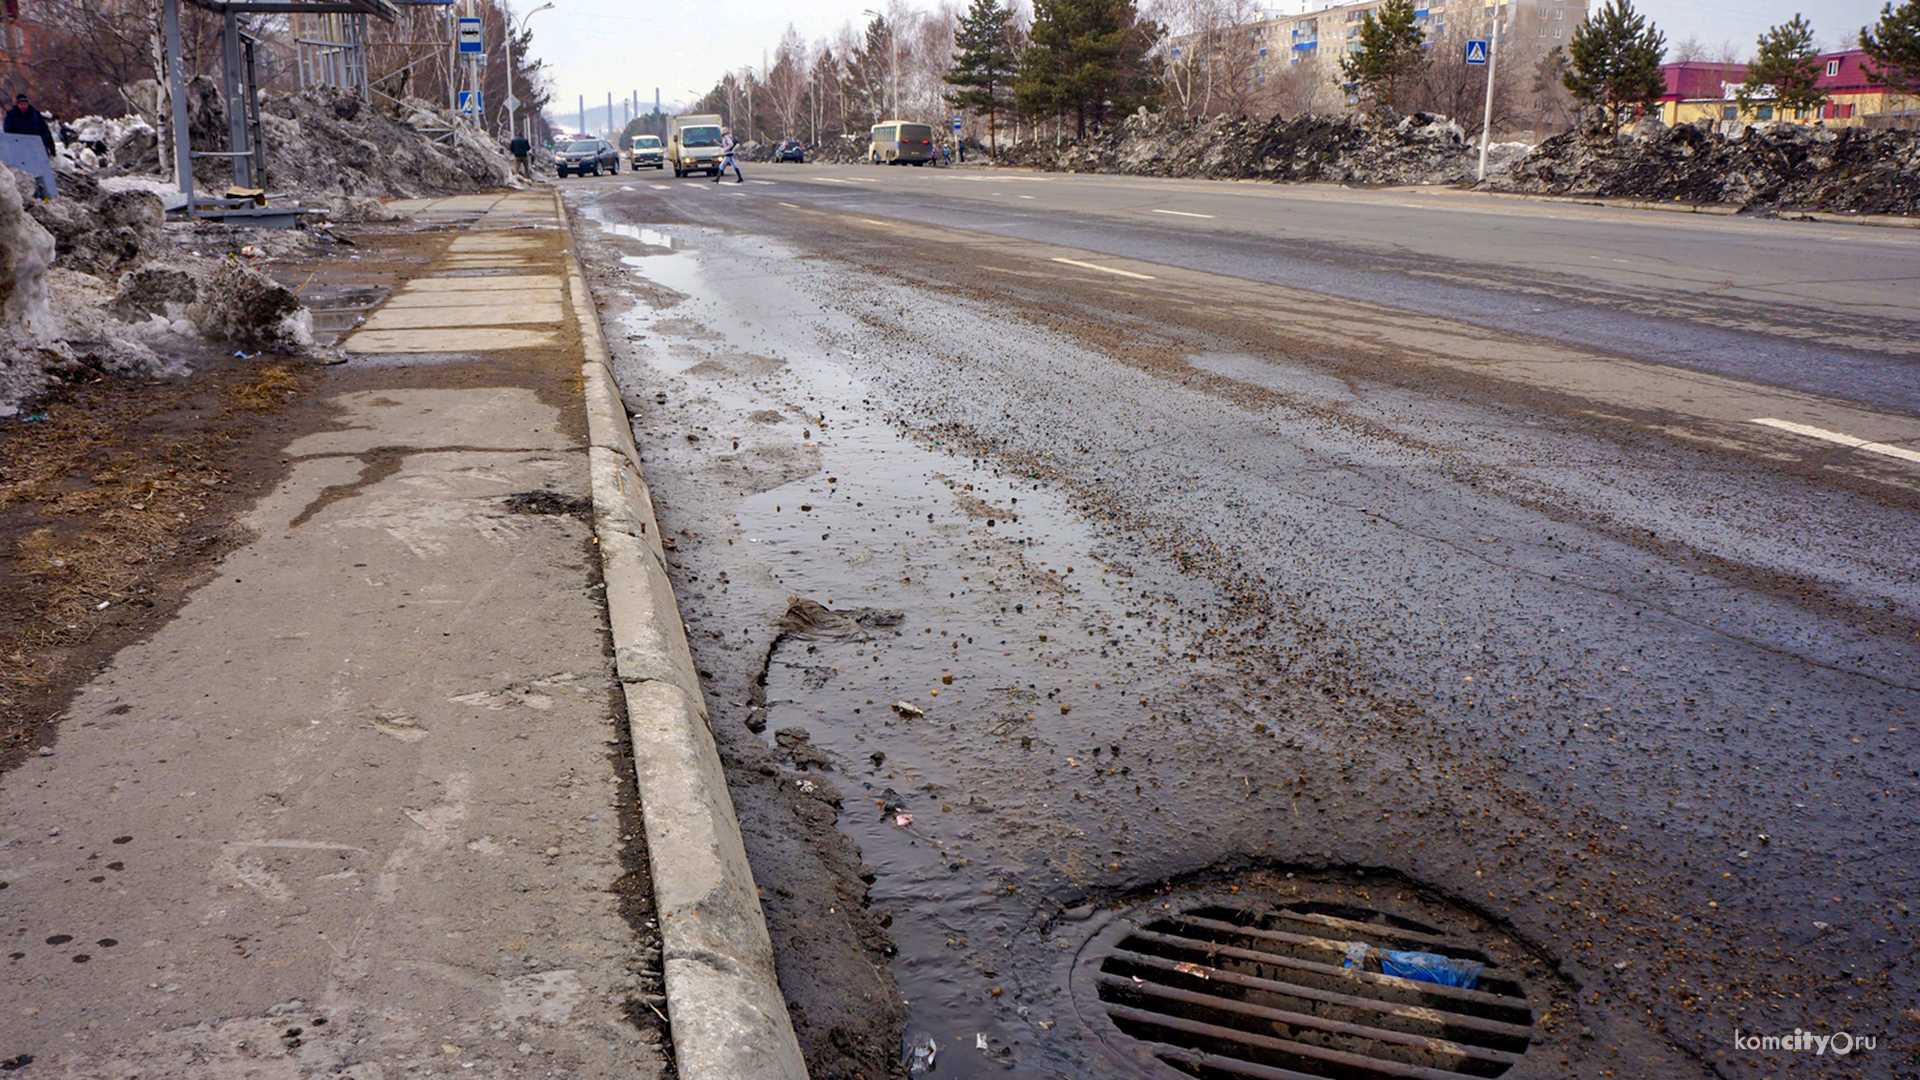 Дороги Комсомольска-на-Амуре в летнее время будут активнее чистить от пыли и грязи